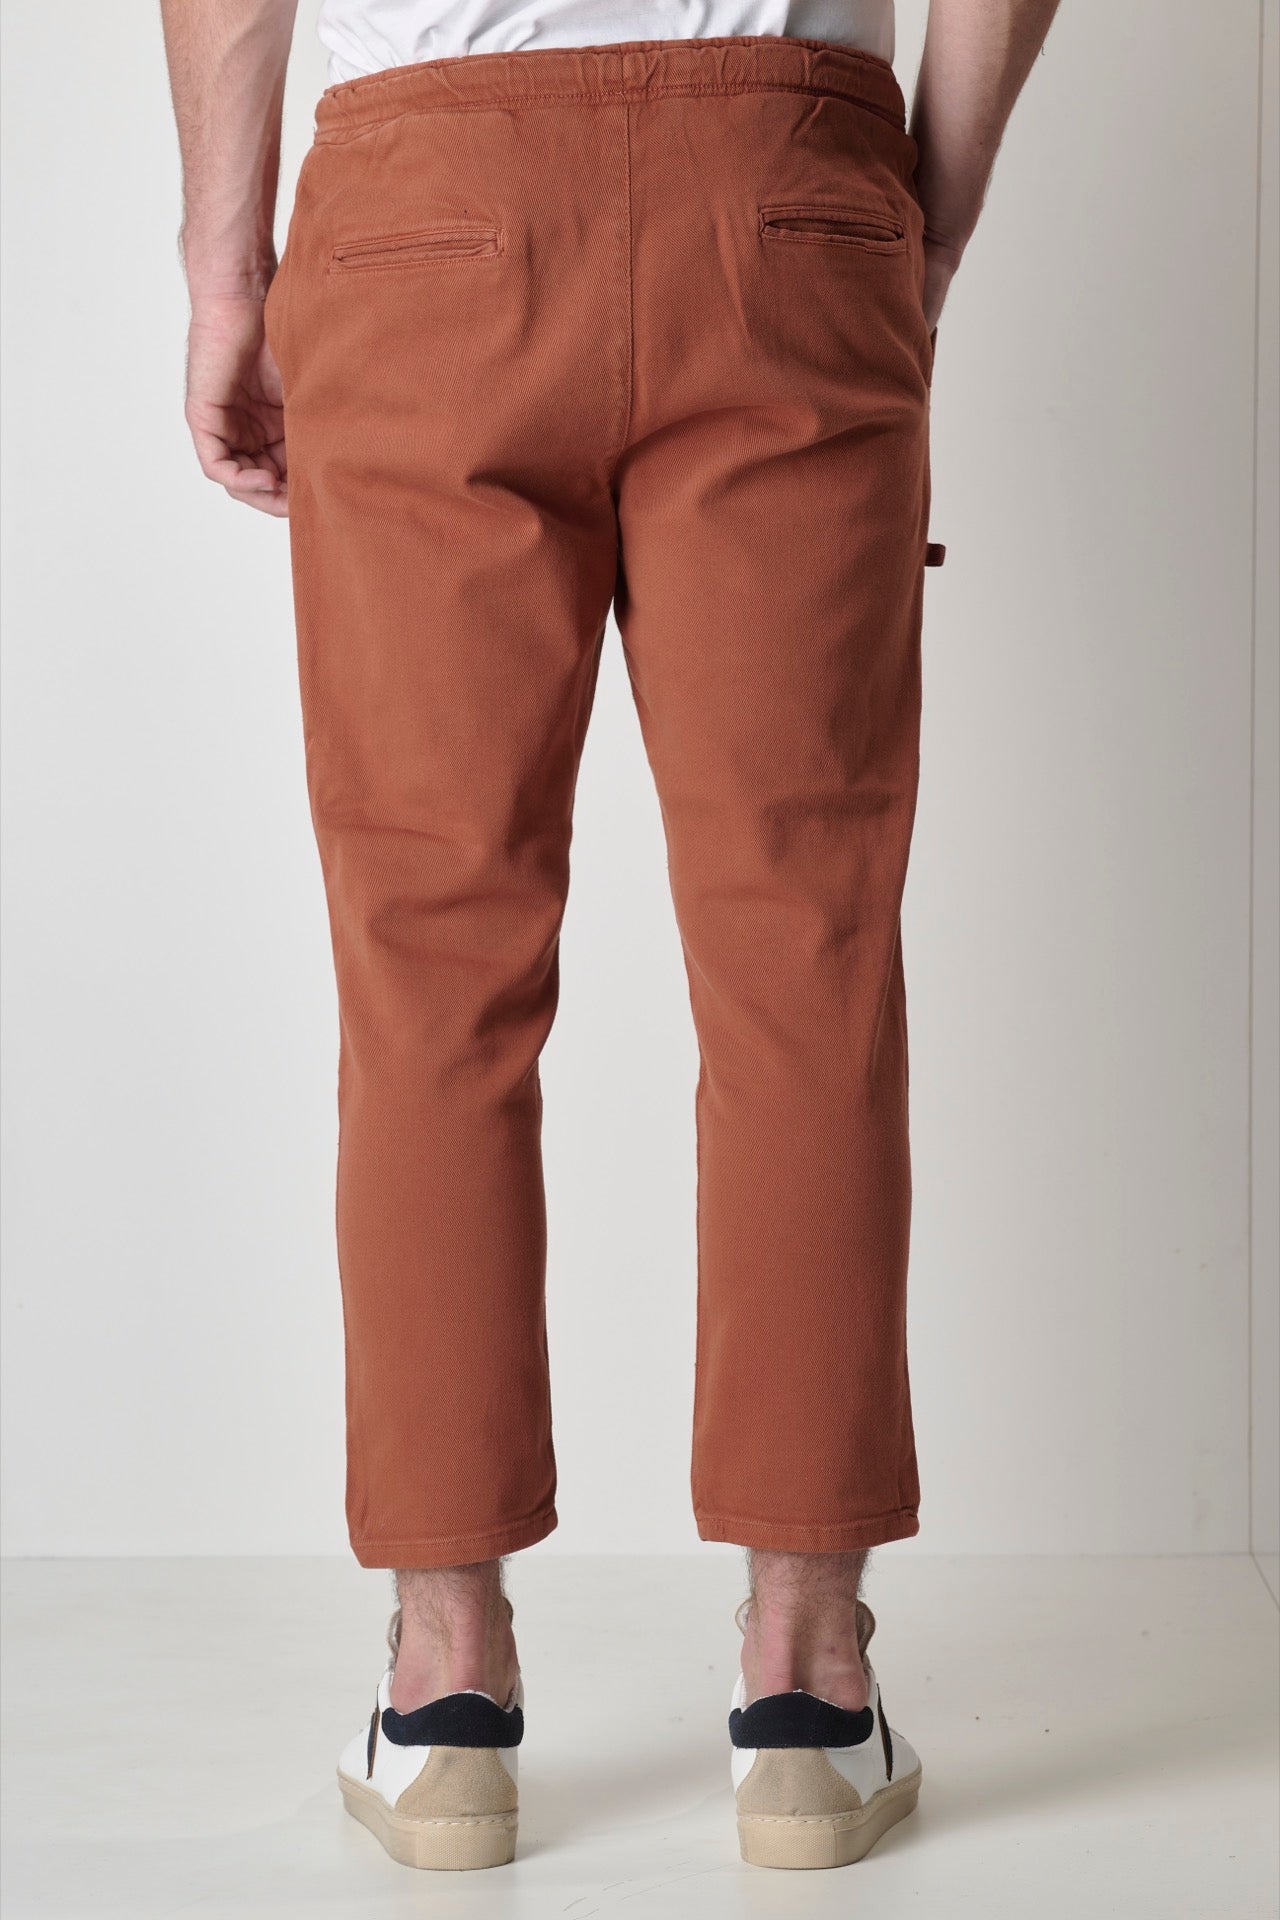 ALICANTE - Pantalone Drill Coccio con elastico